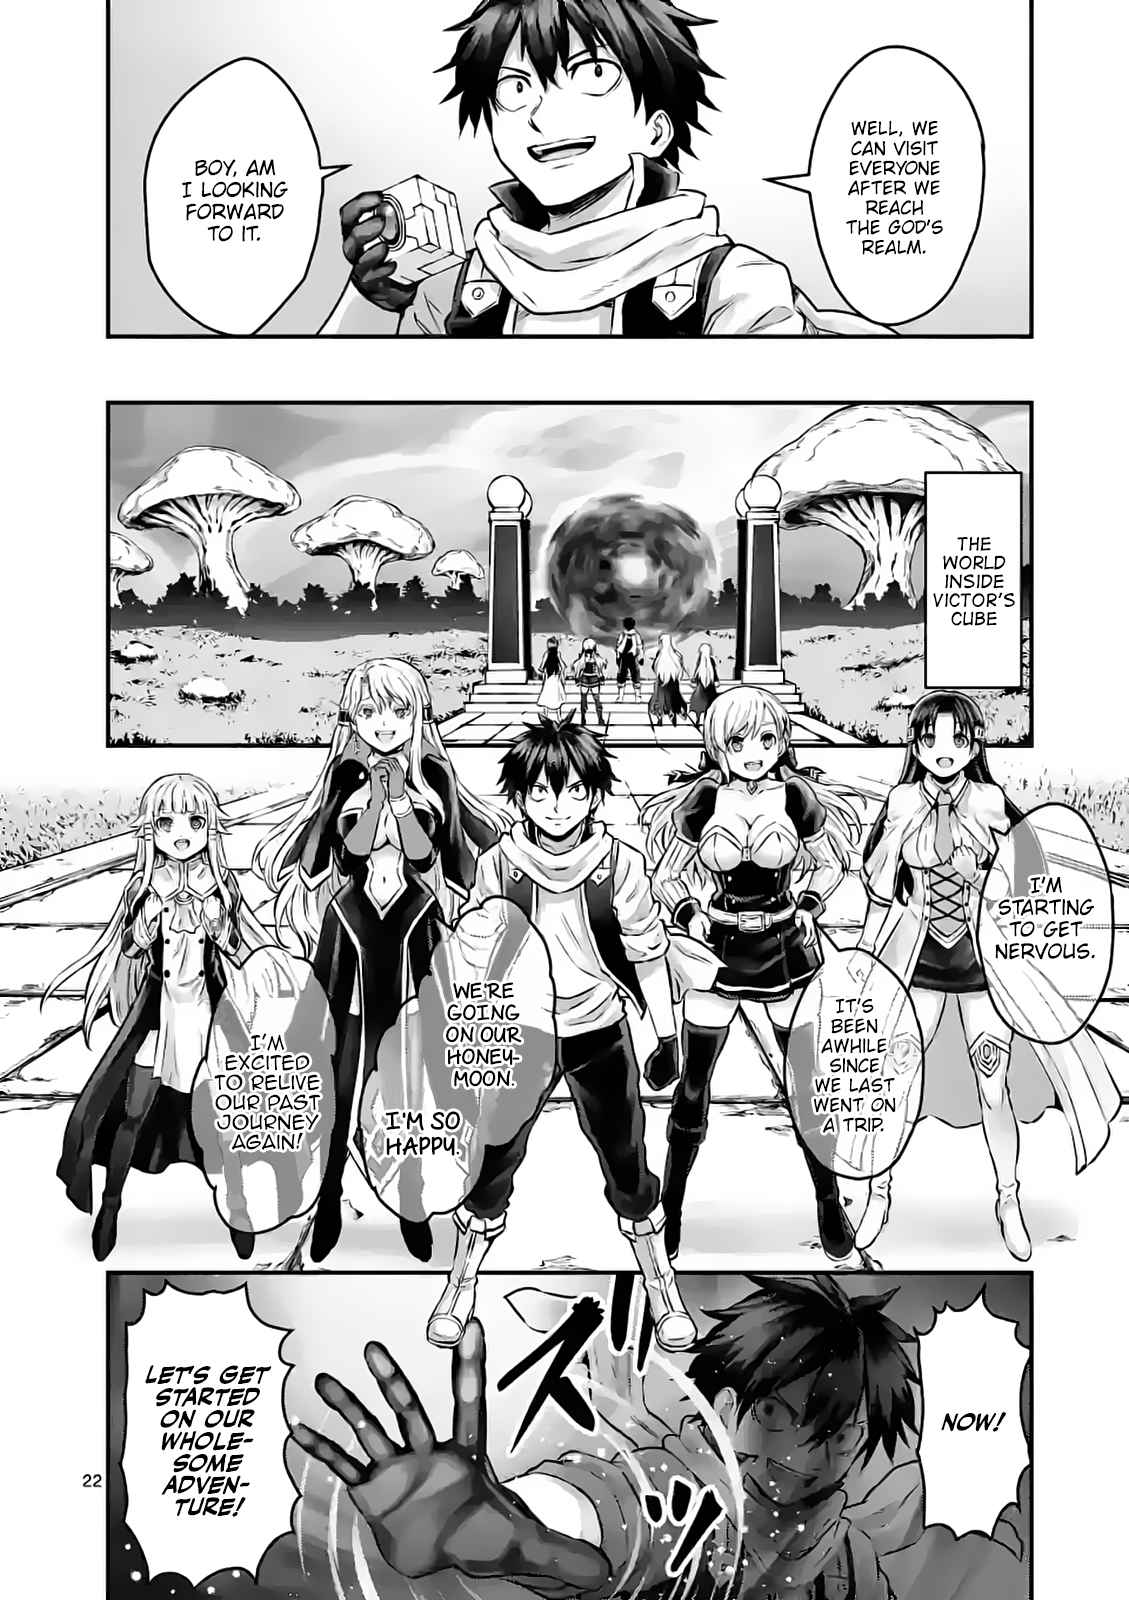 Yuusha ga Shinda! - Kami no Kuni-hen 2, Yuusha ga Shinda! - Kami no Kuni-hen  2 Page 1 - Read Free Manga Online at Ten Manga